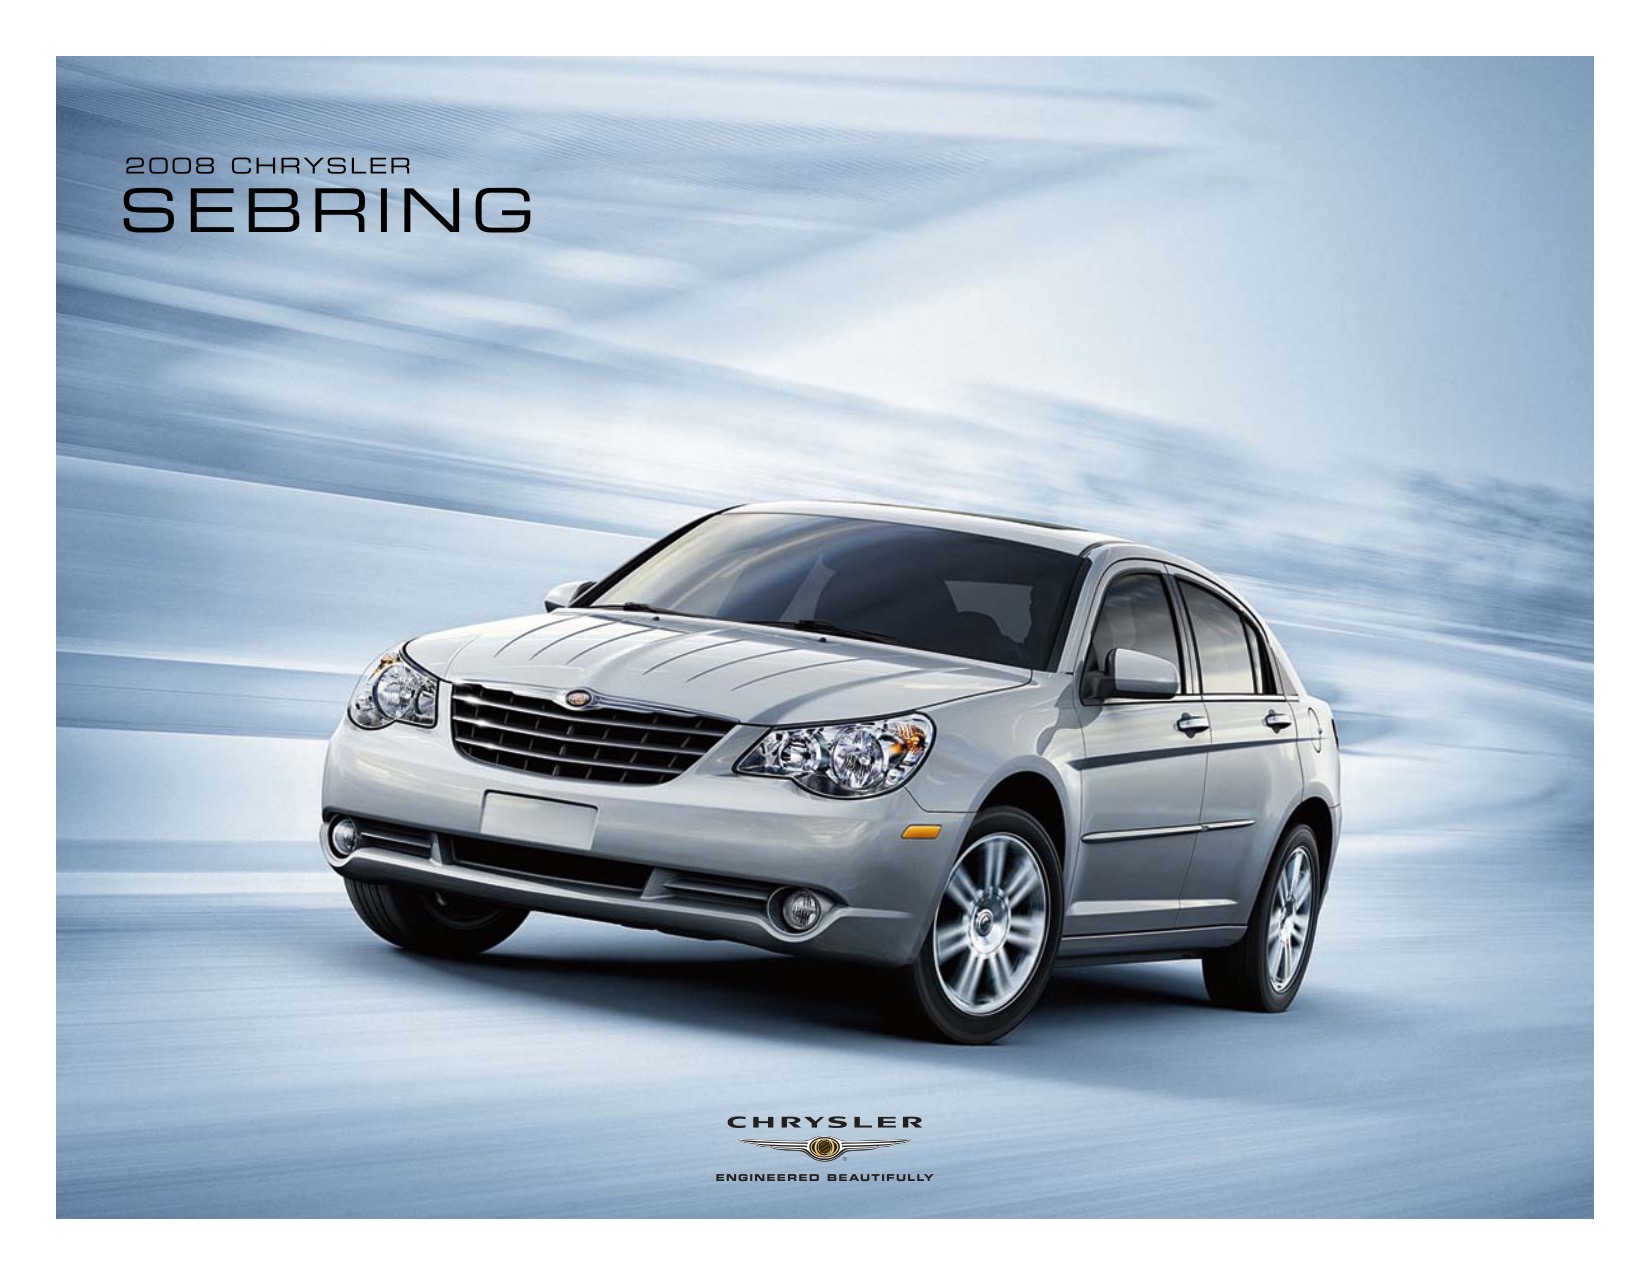 2008 Chrysler Sebring Brochure